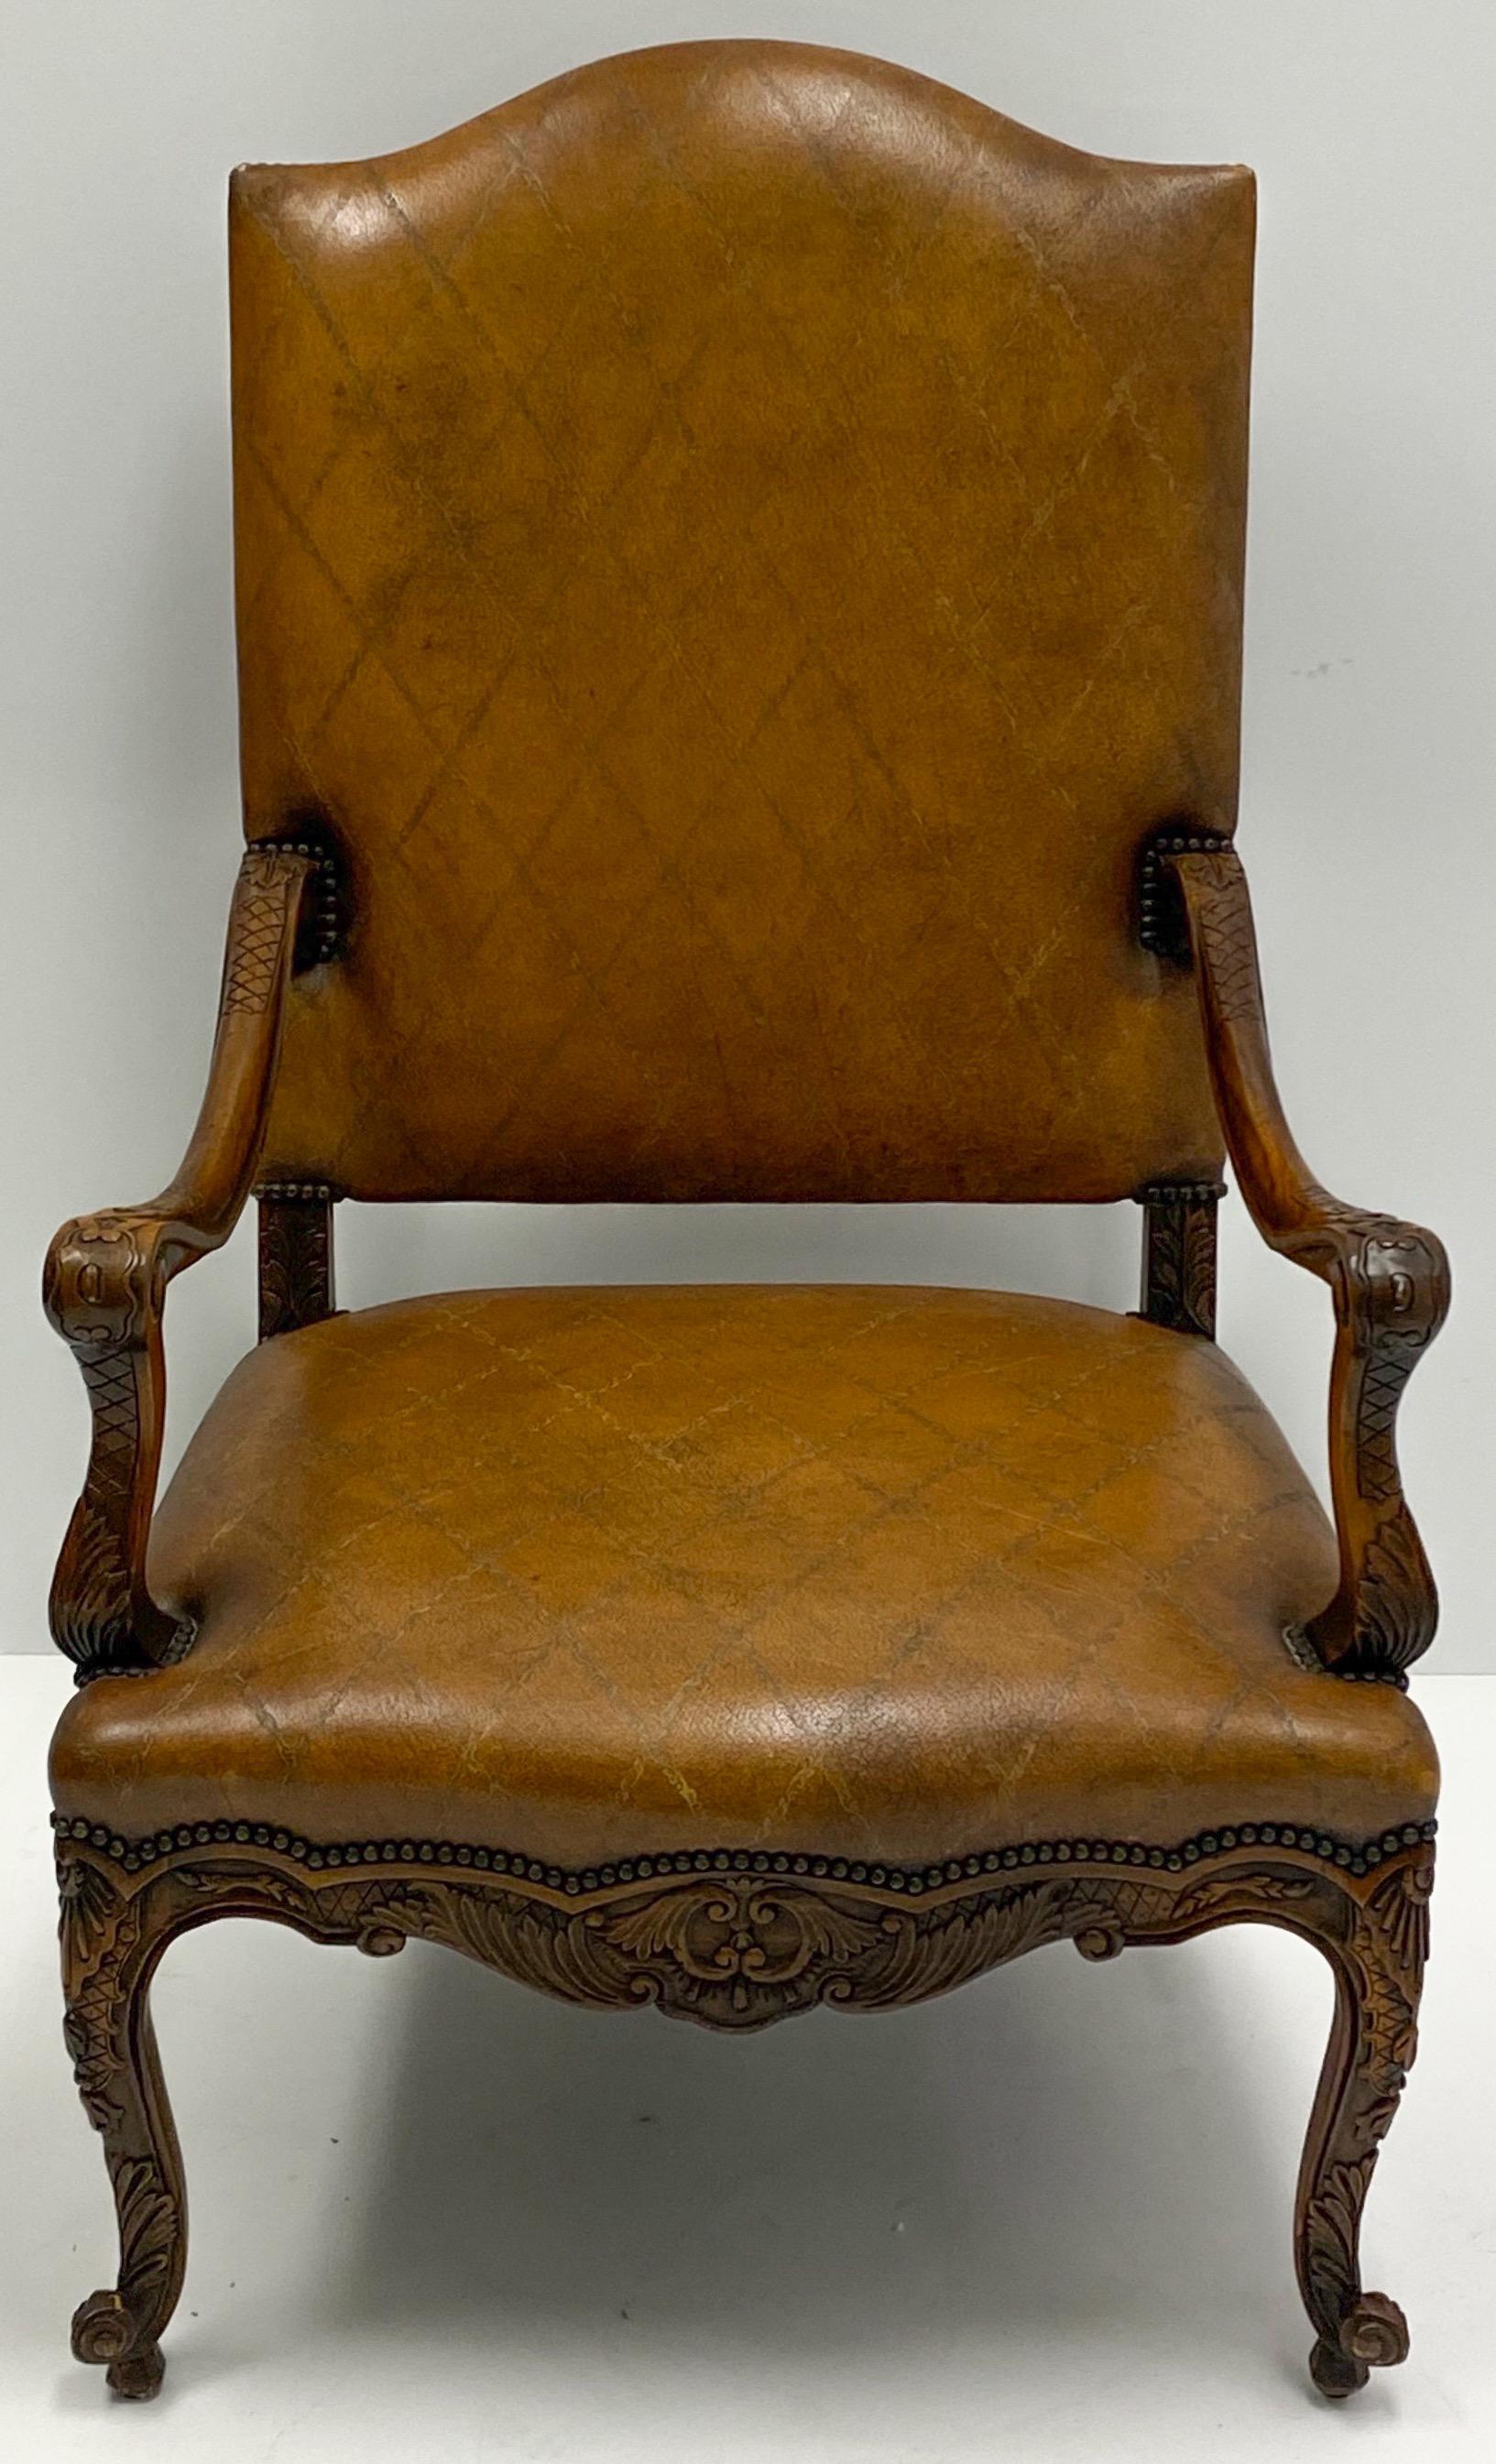 Dies ist eine wunderbare große Skala Französisch Stil Obstholz Leder bergere Stuhl in sehr gutem Zustand. Wahrscheinlich stammt es aus den 80er Jahren. Es ist nicht gekennzeichnet.